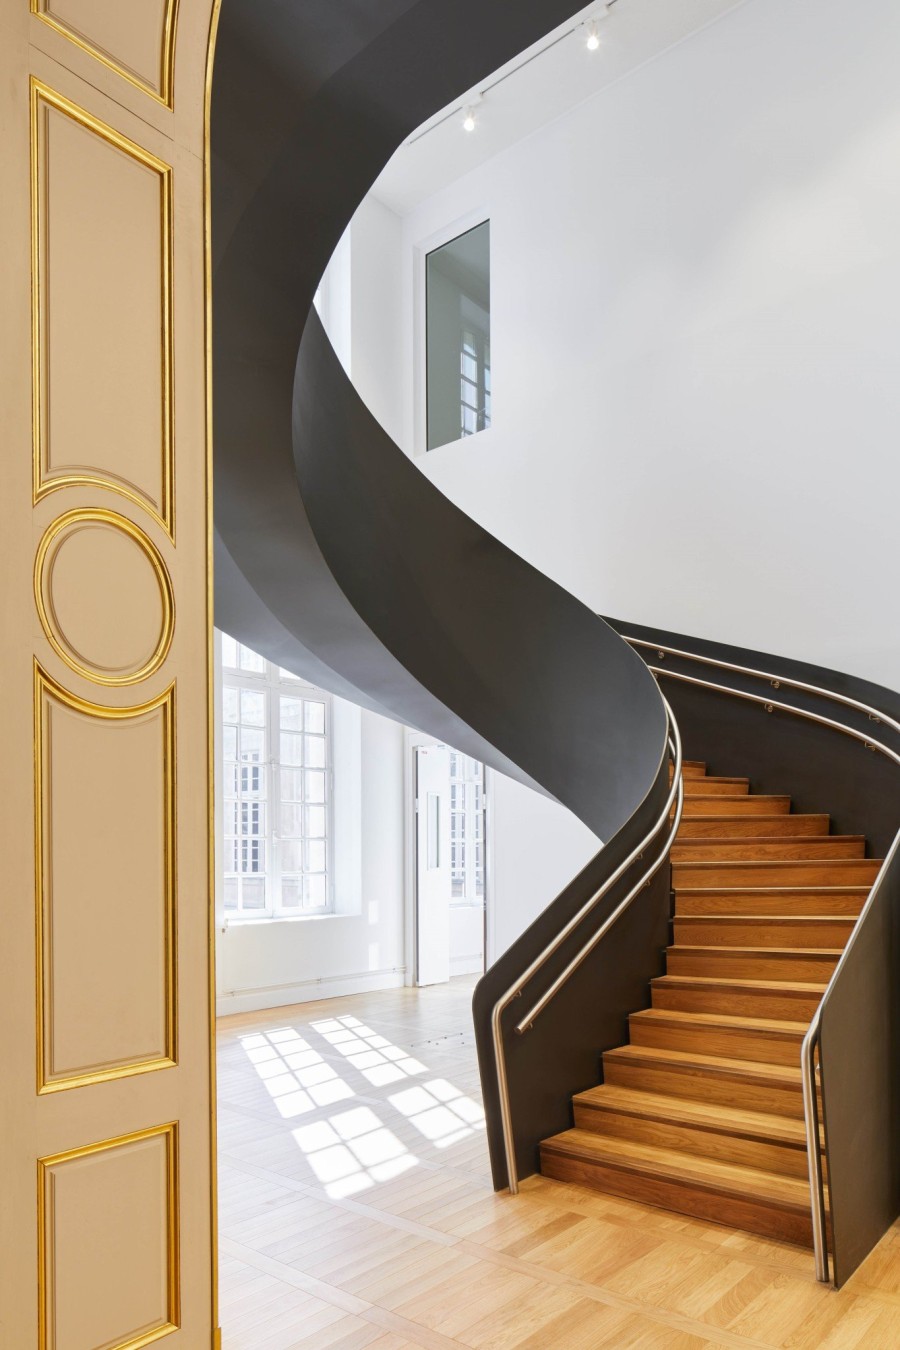 Το Musée Carnavalet στο Παρίσι ανοίγει ξανά, ανακαινισμένο με σύγχρονη αύρα- Φωτογραφία 9